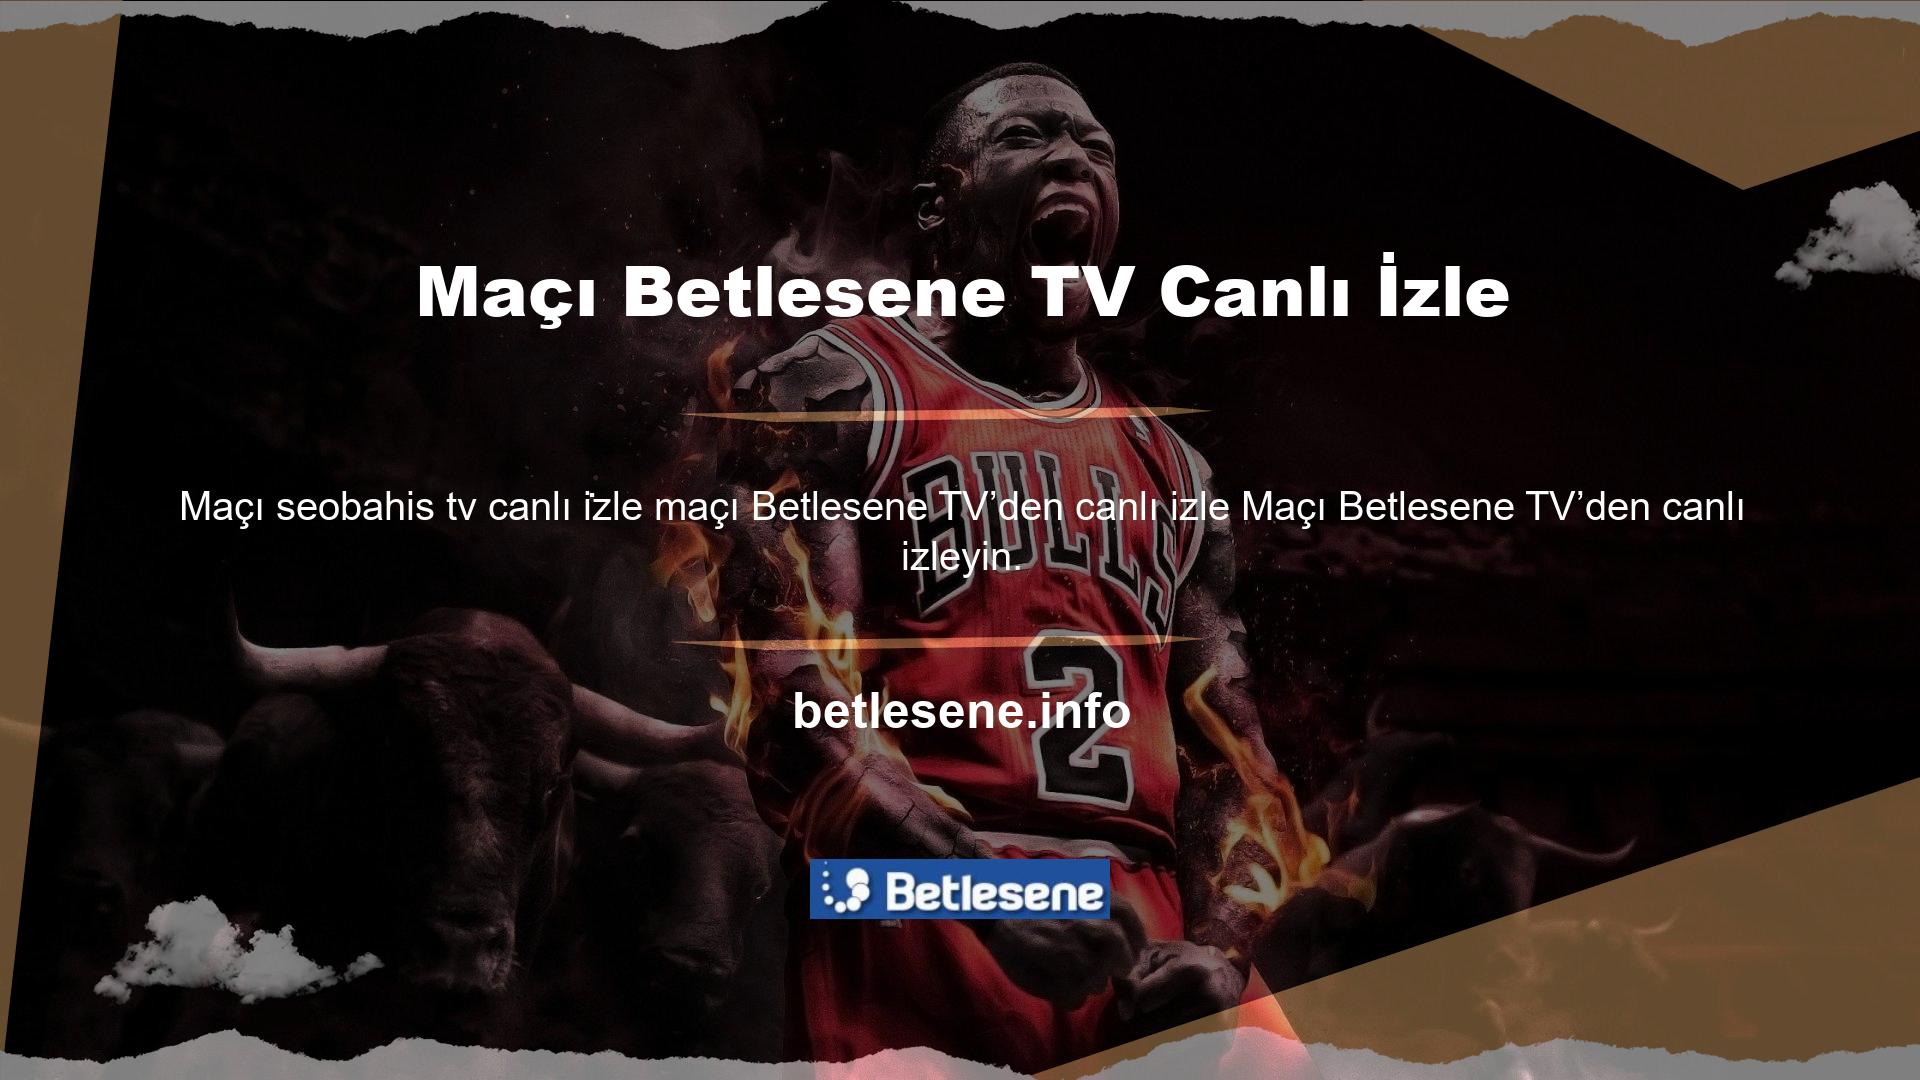 Ayrıca maçı Betlesene TV’den canlı izle TV özellikli web sitelerini ziyaret eden tüm izleyiciler spor etkinliklerini izleyebilecekler